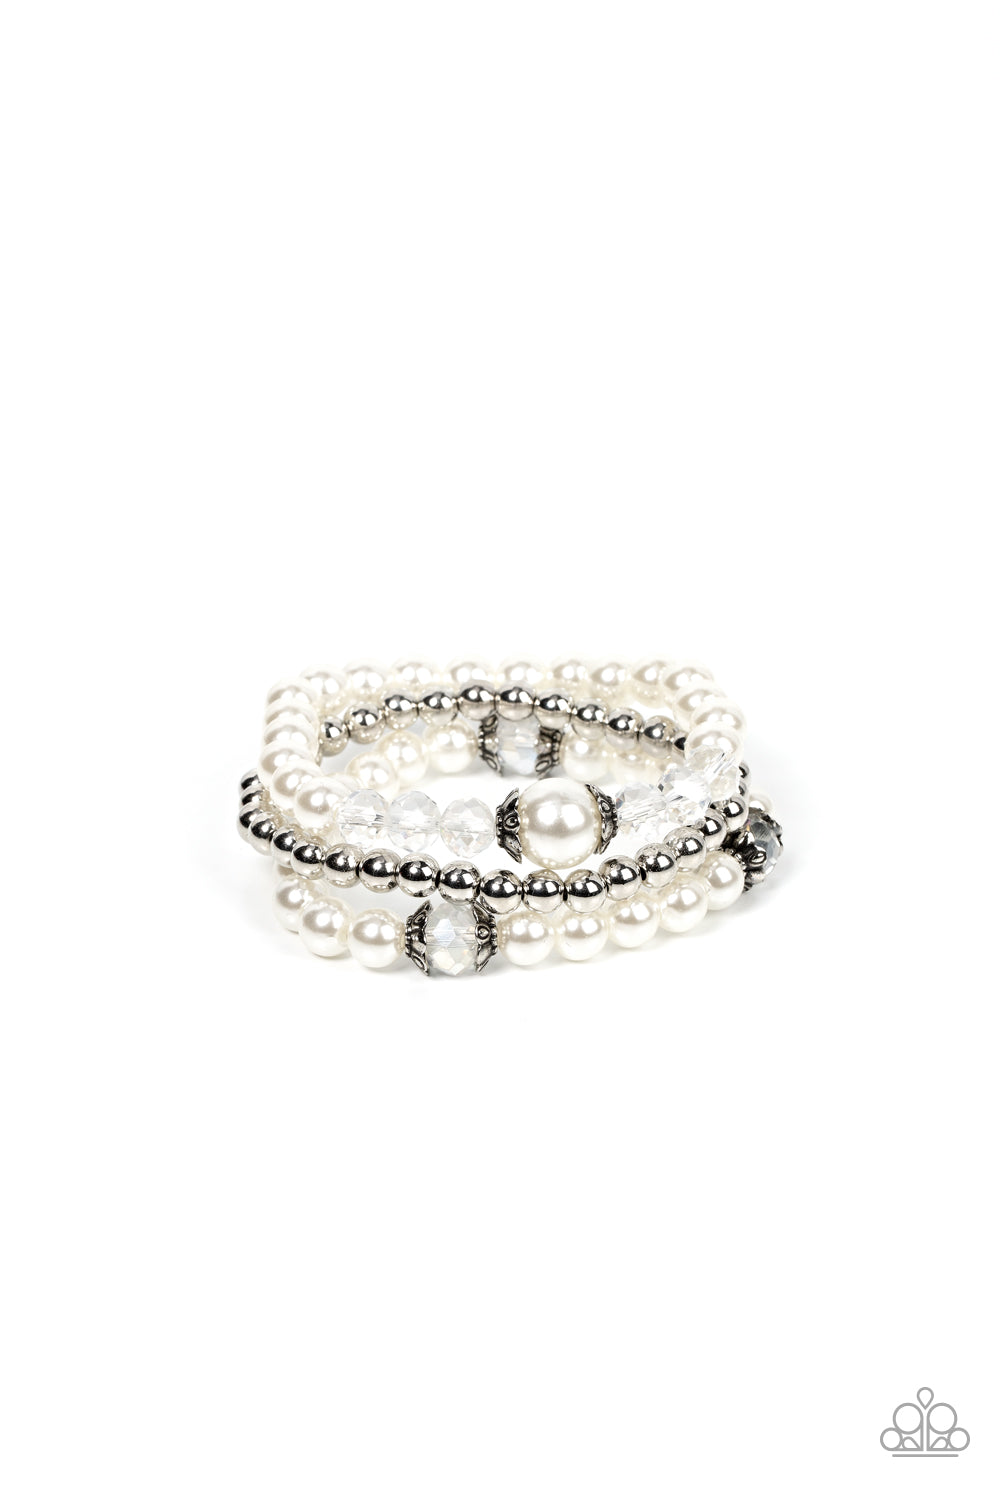 Devoted Dreamer White Bracelet - Jewelry by Bretta